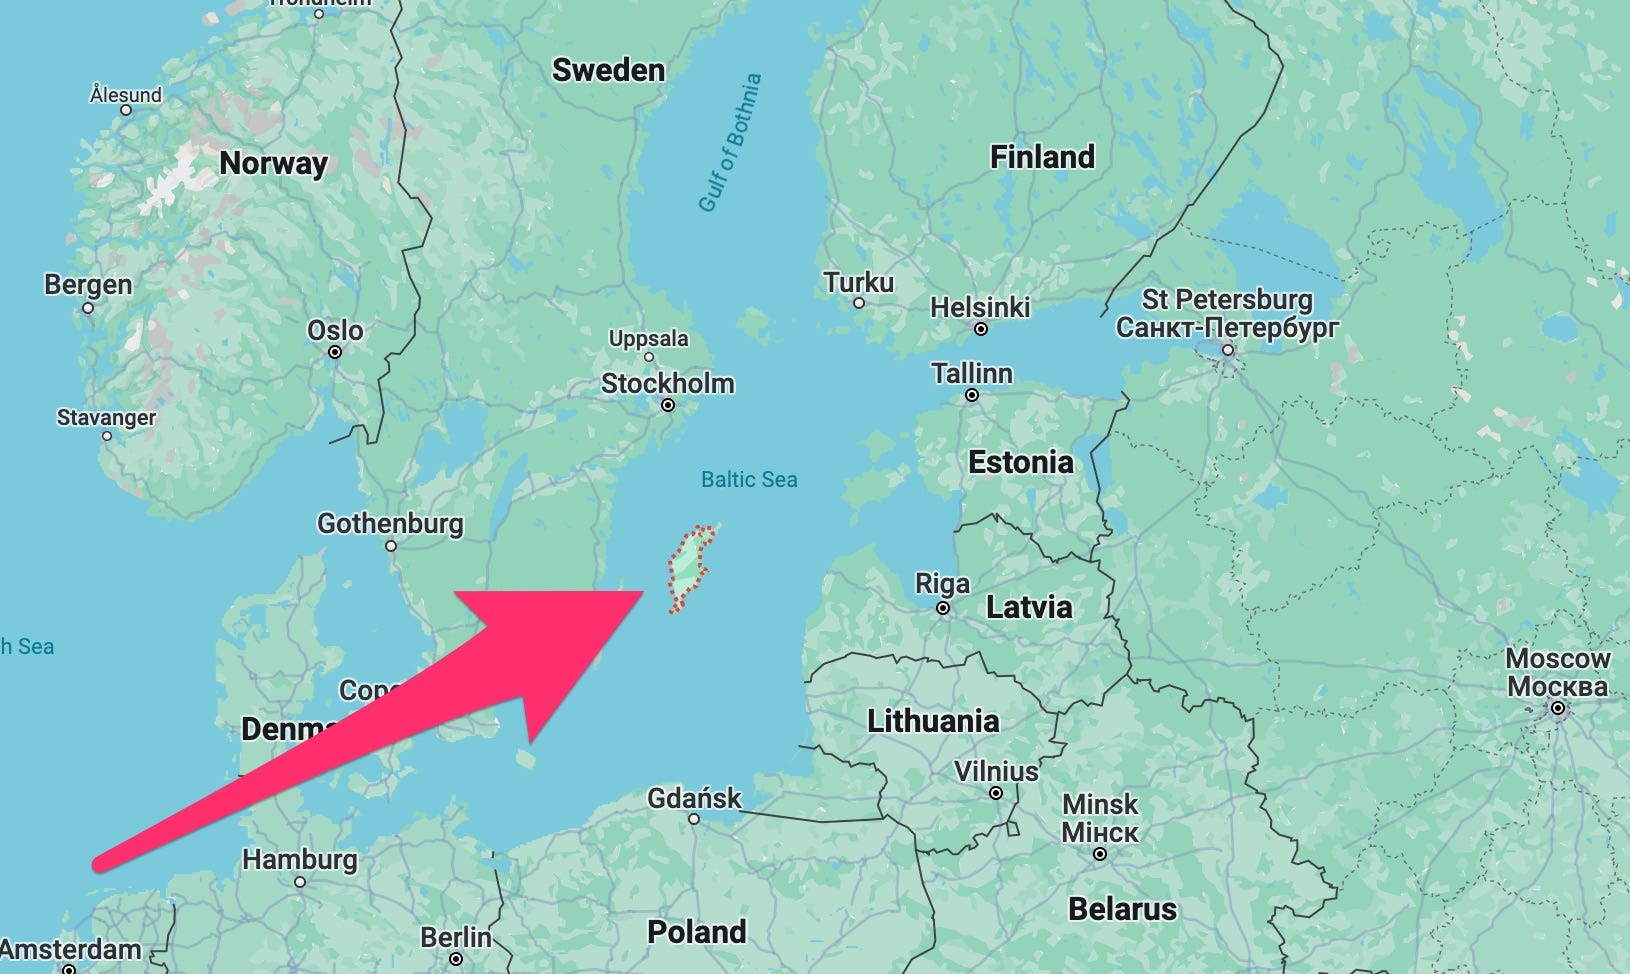 Eine Karte, die mehrere baltische Staaten rund um die Ostsee zeigt, mit einem Pfeil, der auf die schwedische Insel Gotland zeigt.